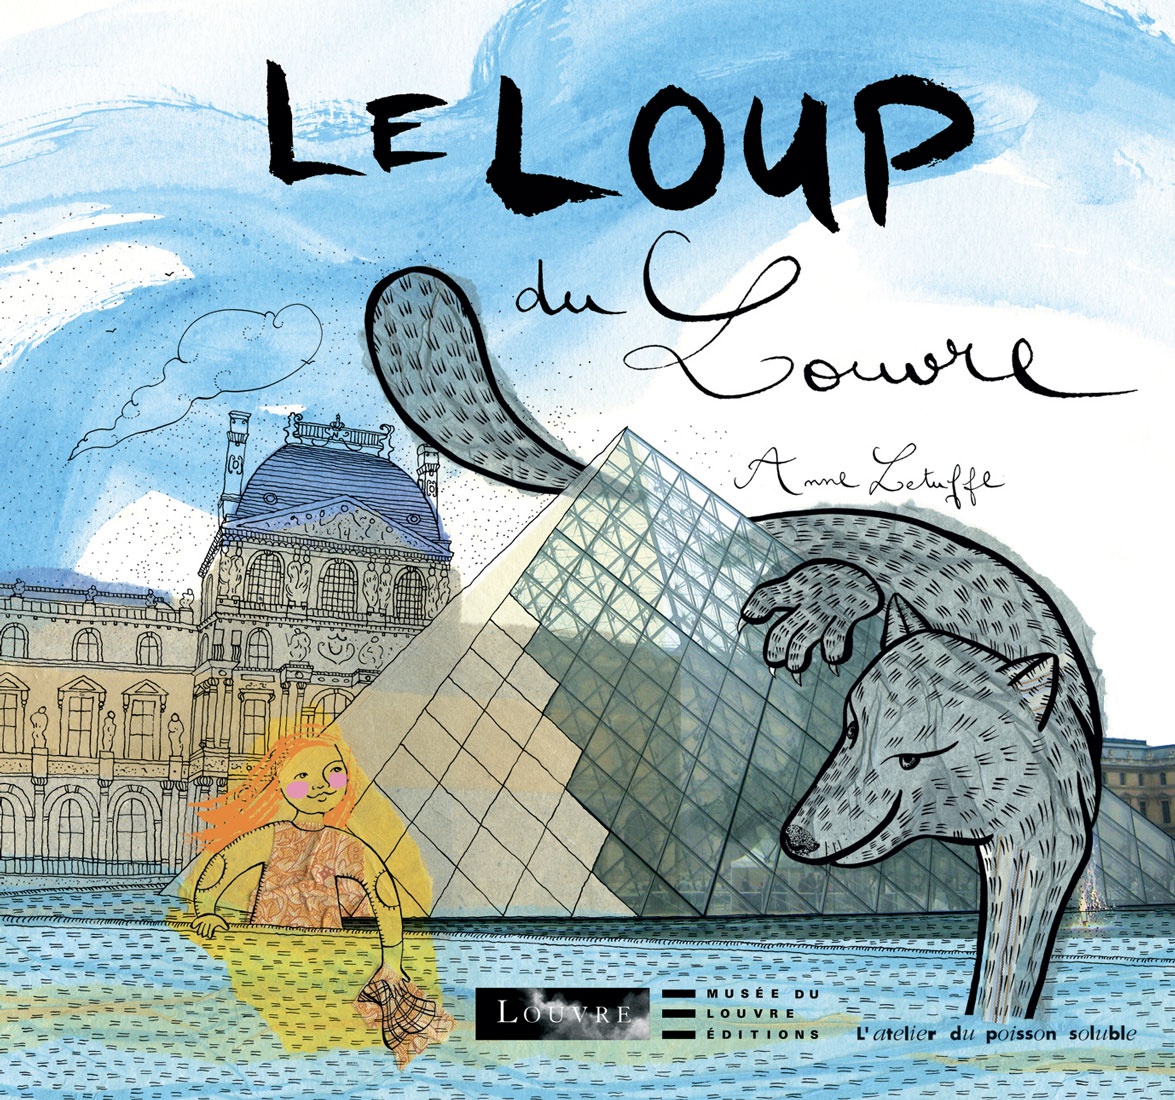 Le loup du Louvre - Atelier du poisson soluble - 2006